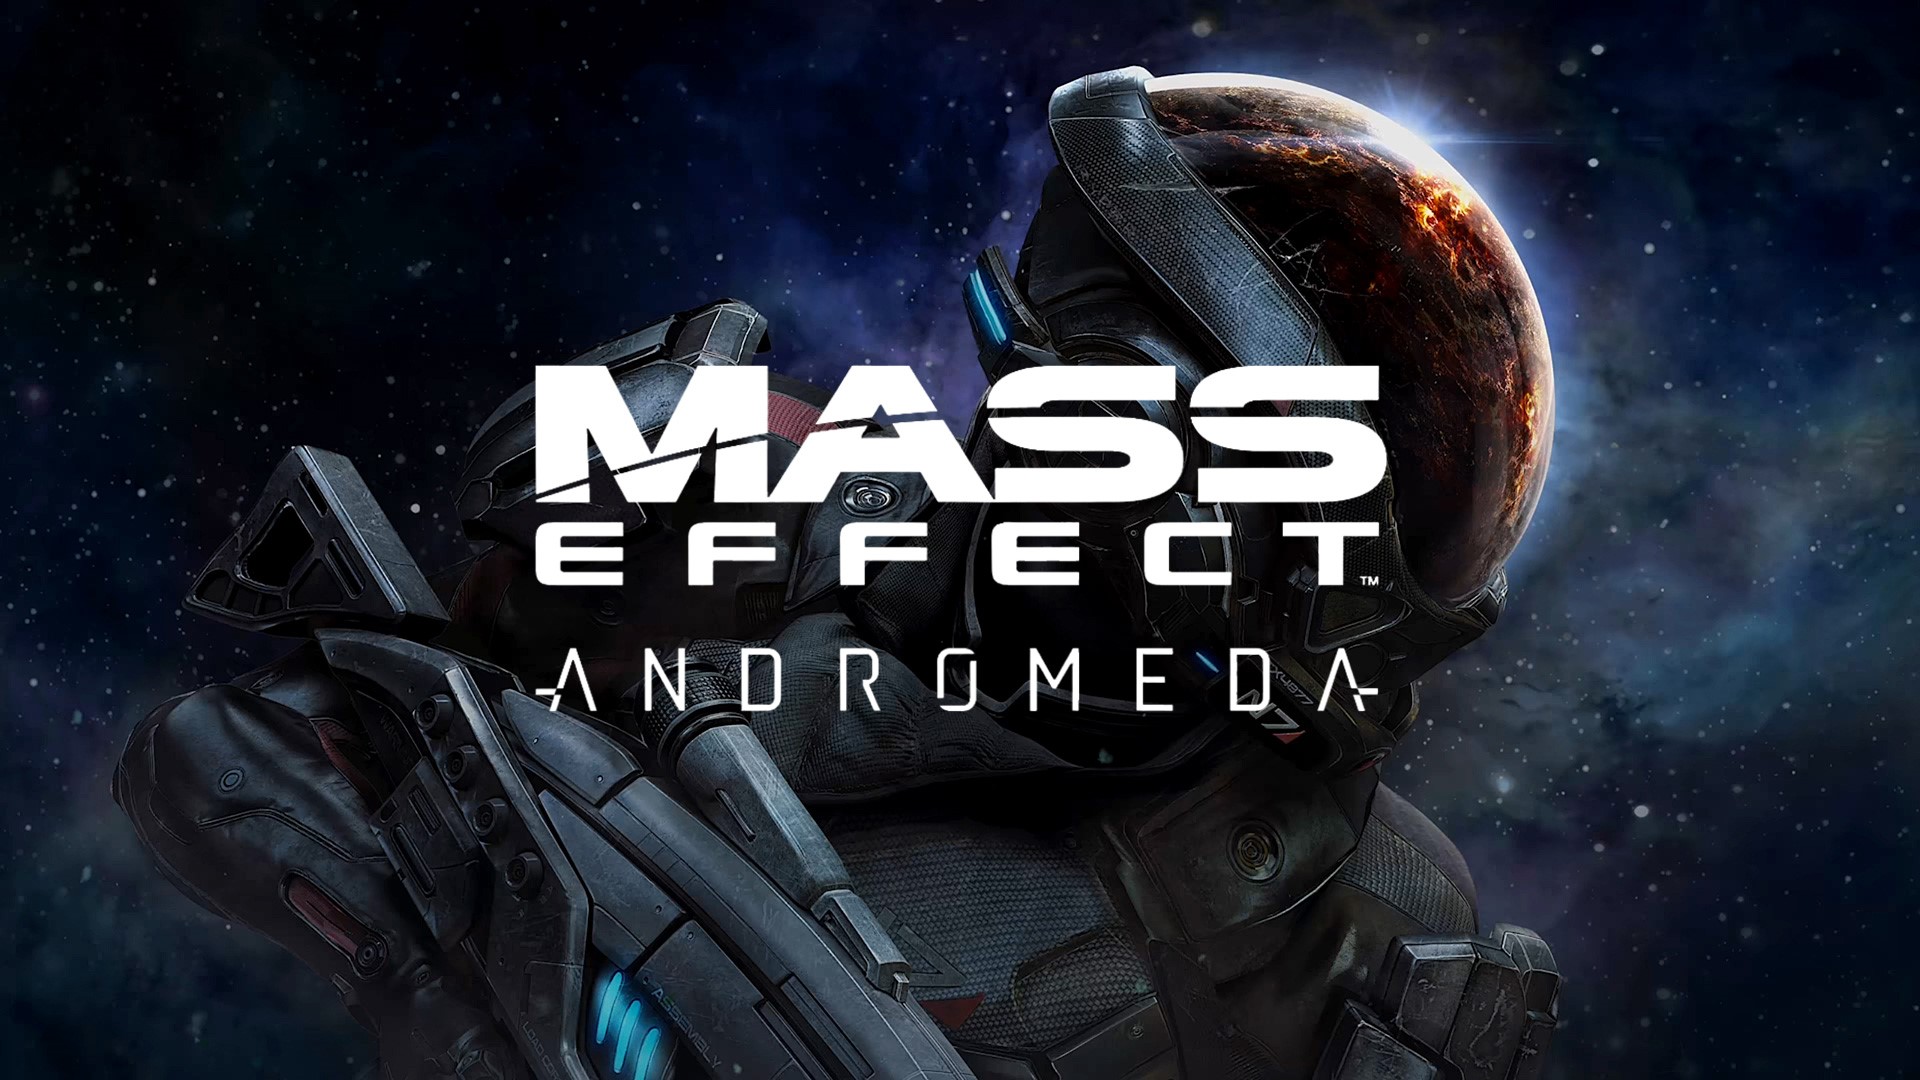 Mass effect andromeda русский. Масс эффект Андромеда обложка. Mass Effect Andromeda poster. Масс эффект 4 Постер. Обложки для игр Mass Effect Andromeda.